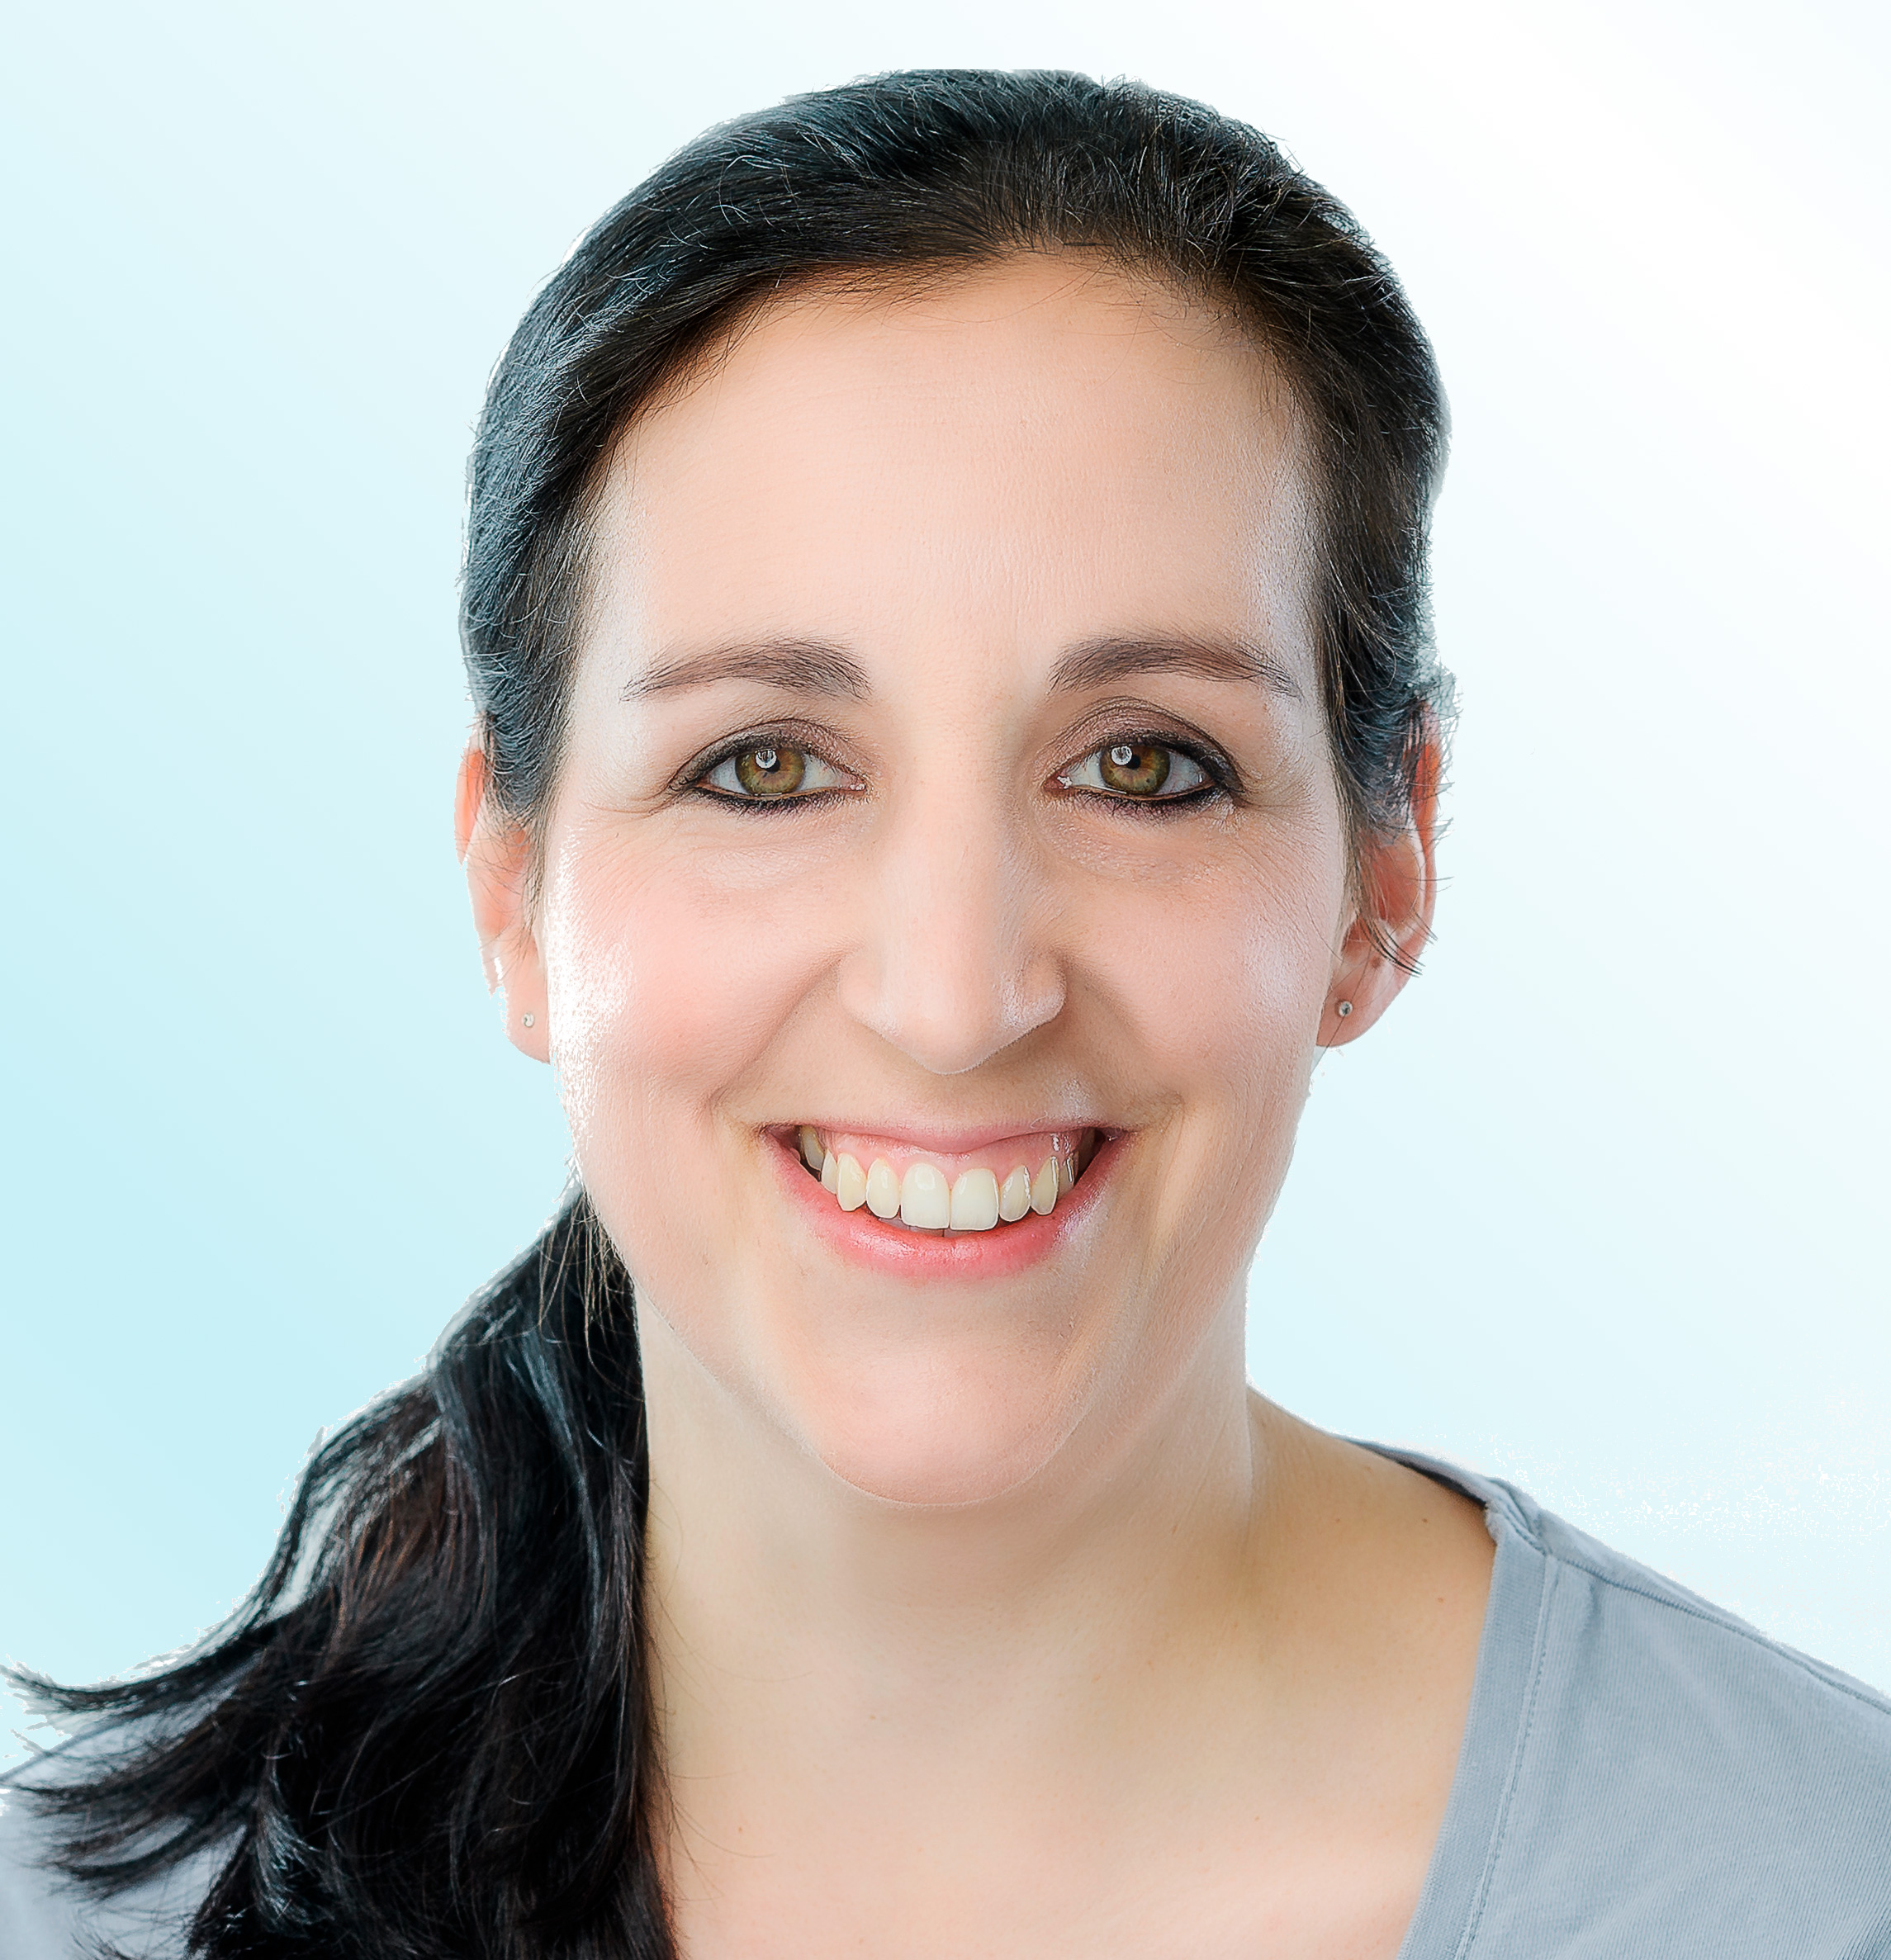 Dermatologue, Dr. med. Sandra Tresch